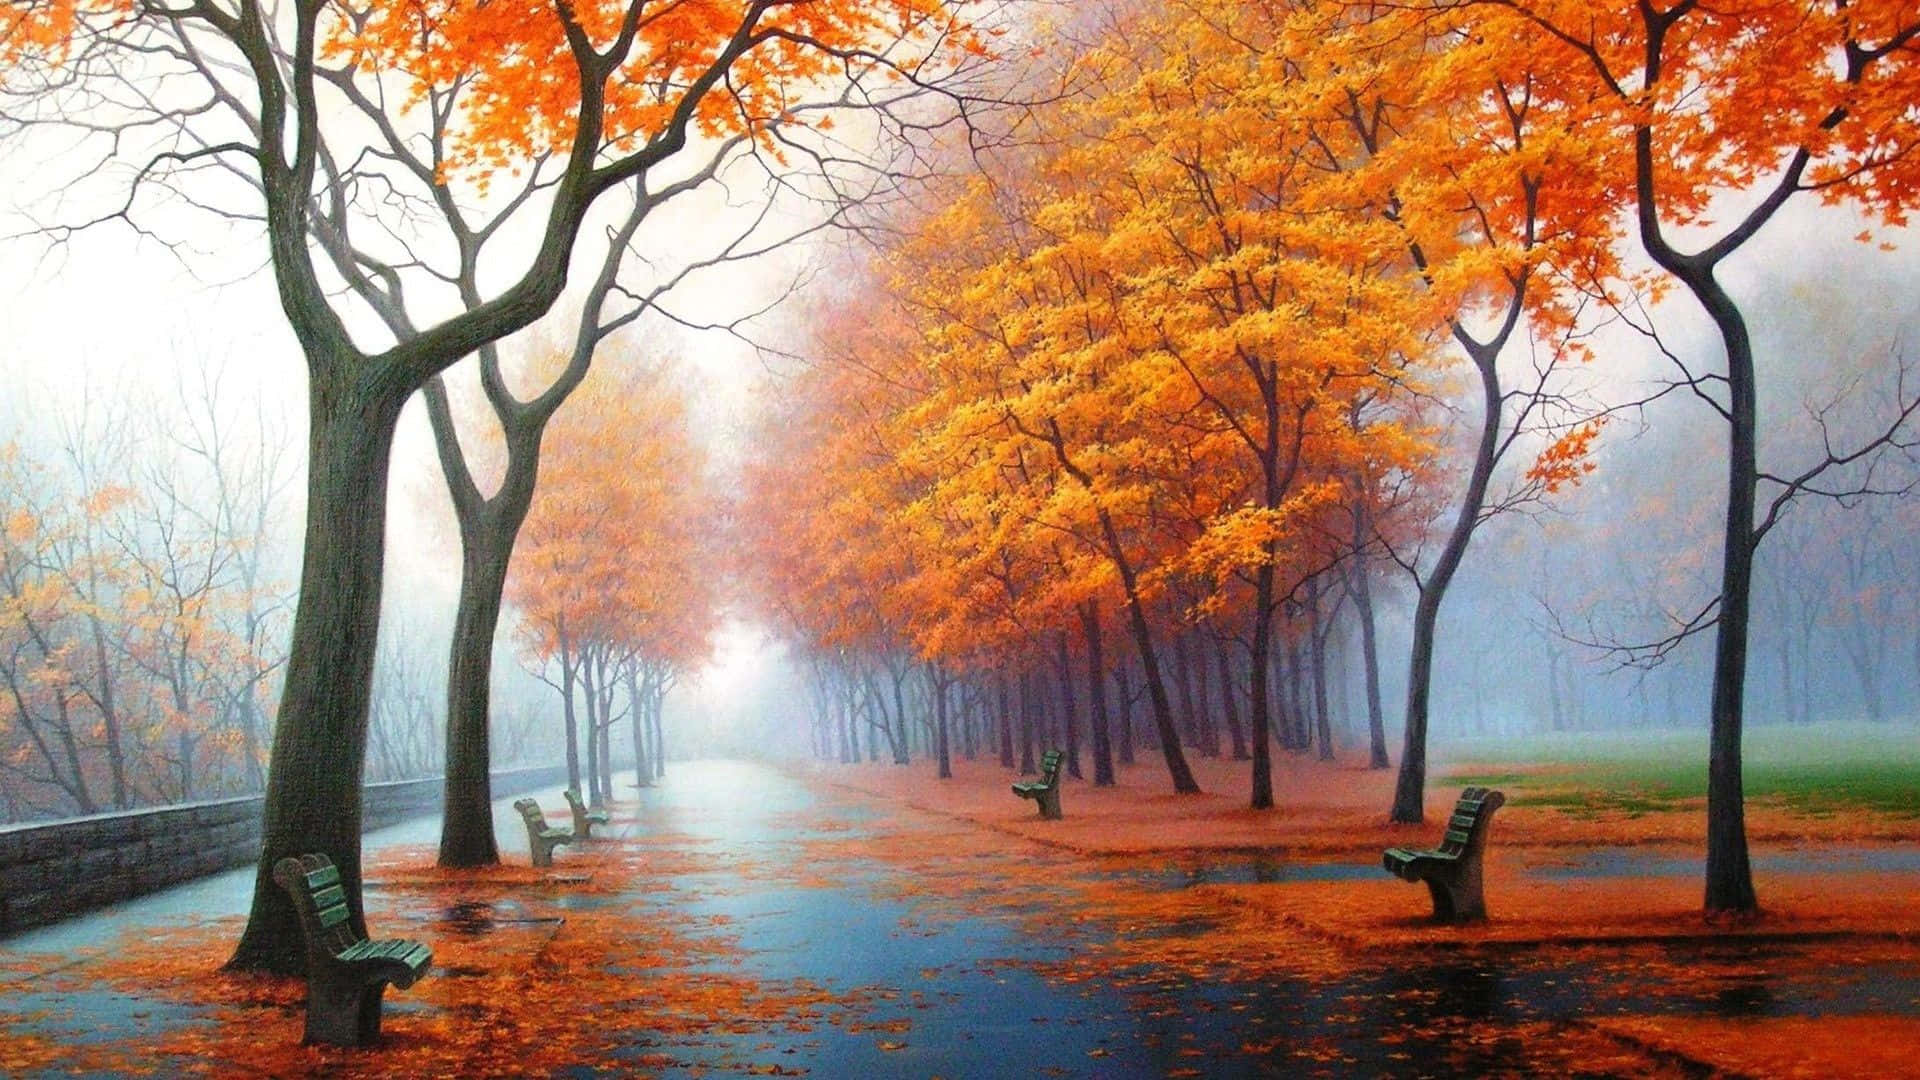 !Nyd de lyse og flotte farver af efteråret! Wallpaper